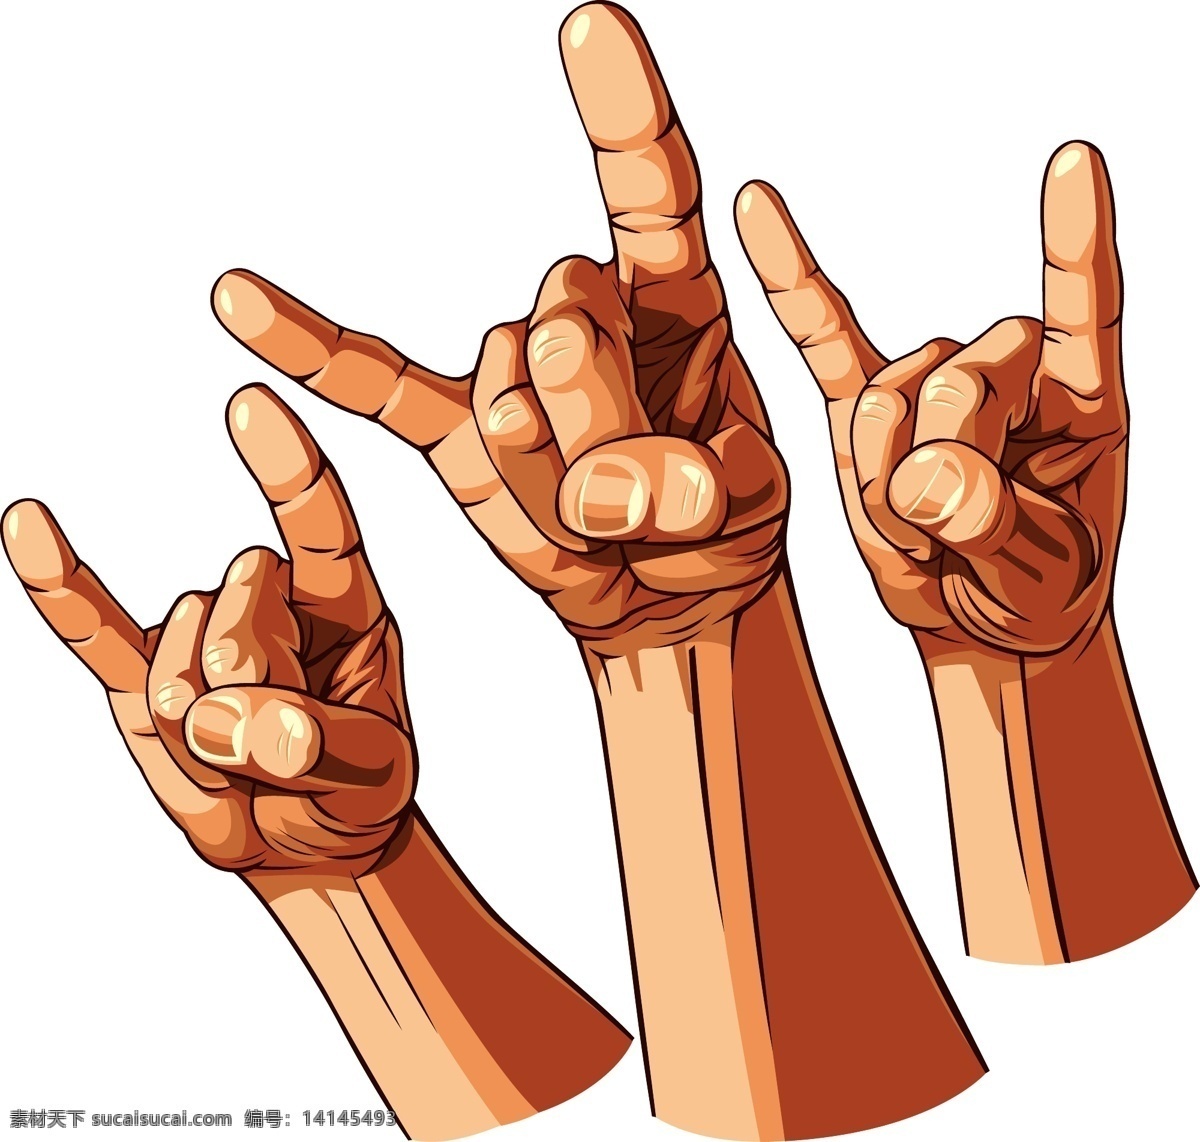 摇滚 摇滚乐 摇滚乐队 手势 手形 手指 rock 音乐 摇滚海报 摇滚标志 舞蹈音乐 文化艺术 白色